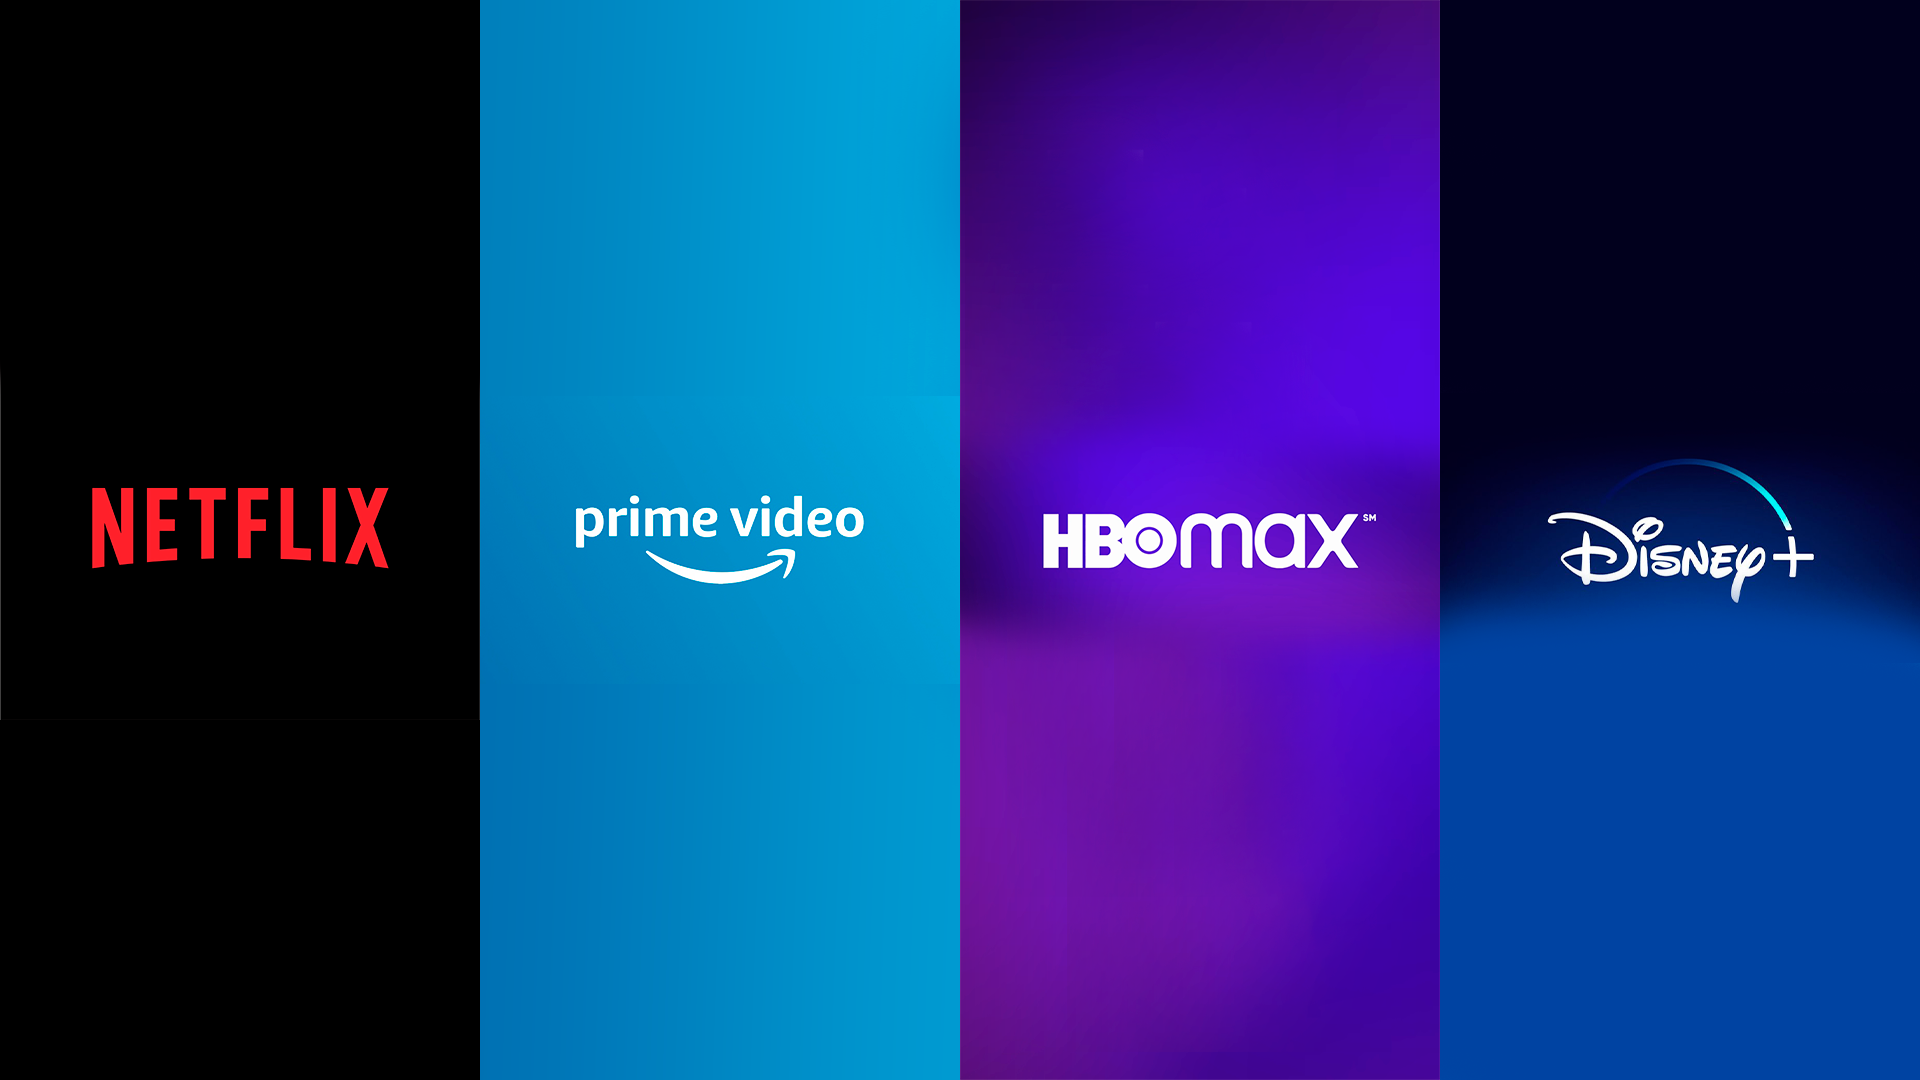 HBO Max no Brasil: saiba data de lançamento e preços